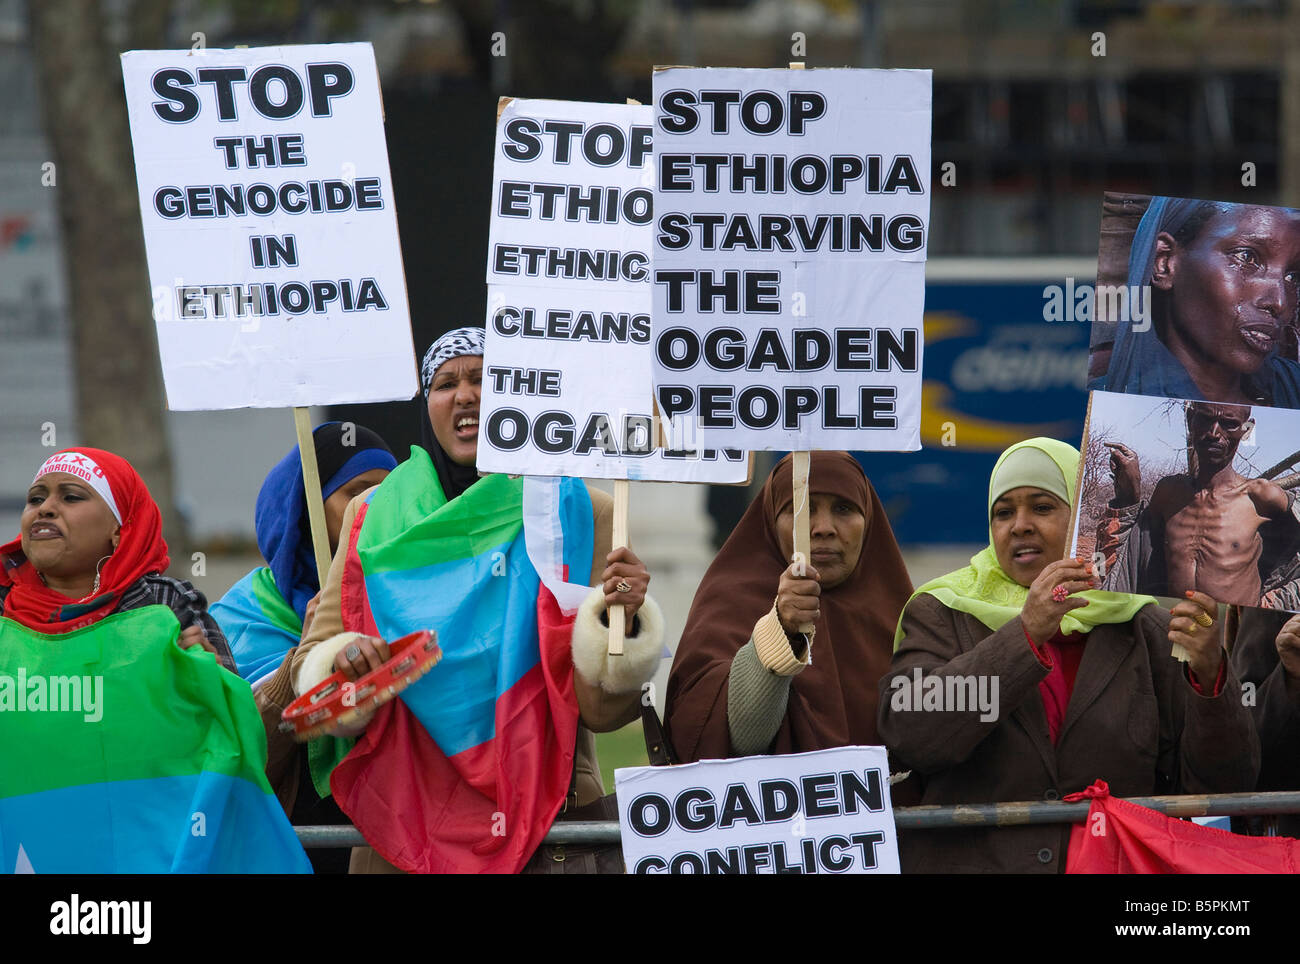 ethiopia-protest-in-parliament-square-6-12-nov-2008-B5PKMT.jpg